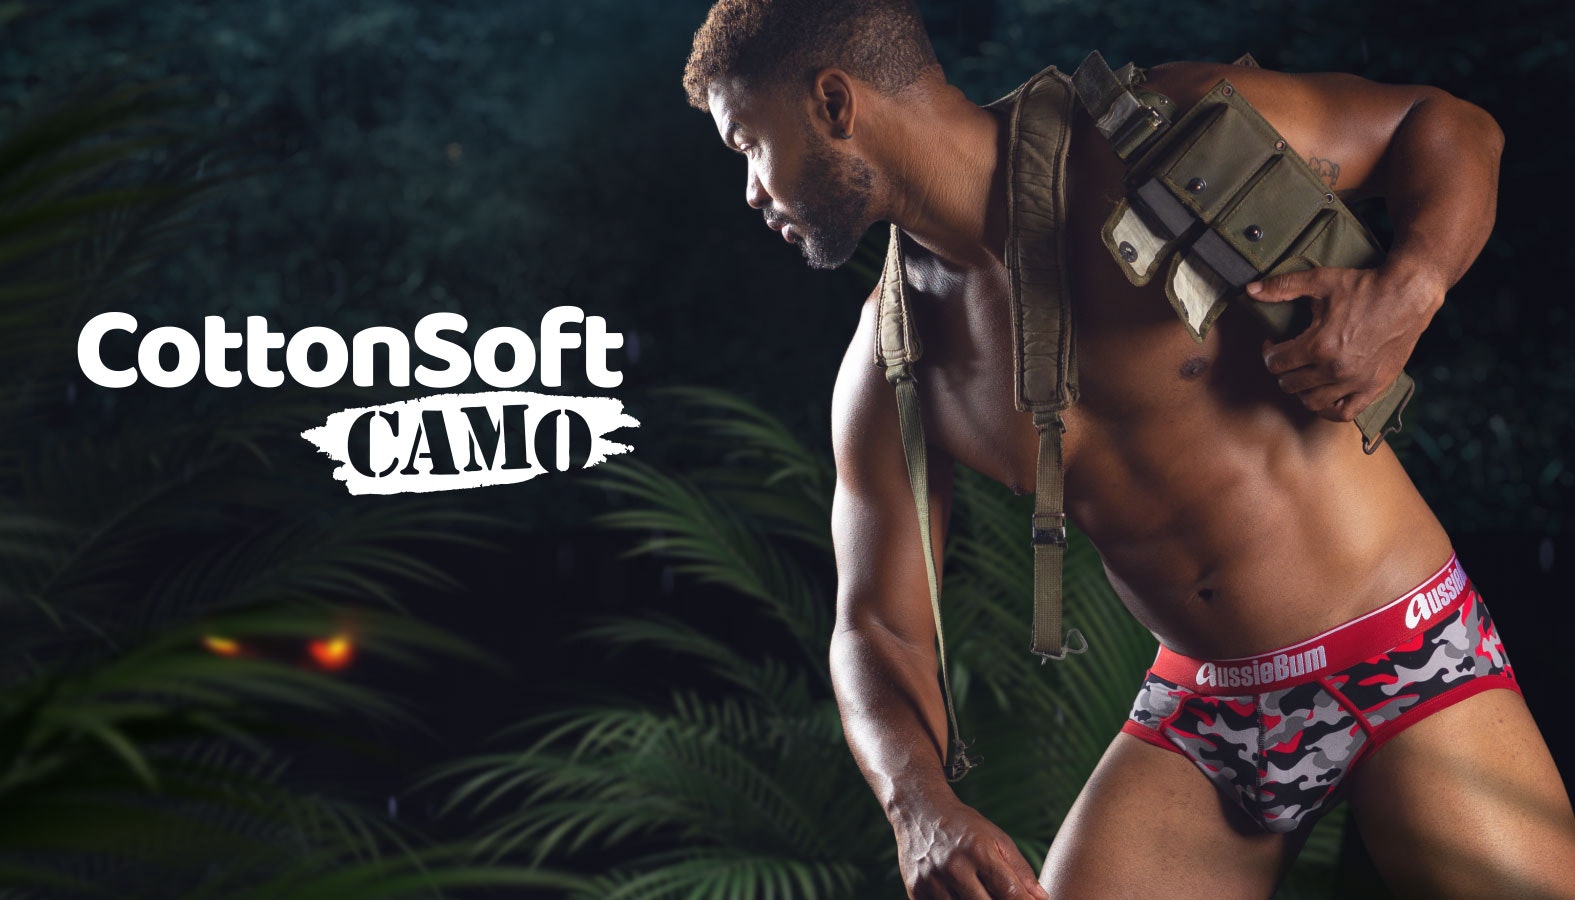 CottonSoft 2.0 Camo Red Brief - Underwear range at aussieBum